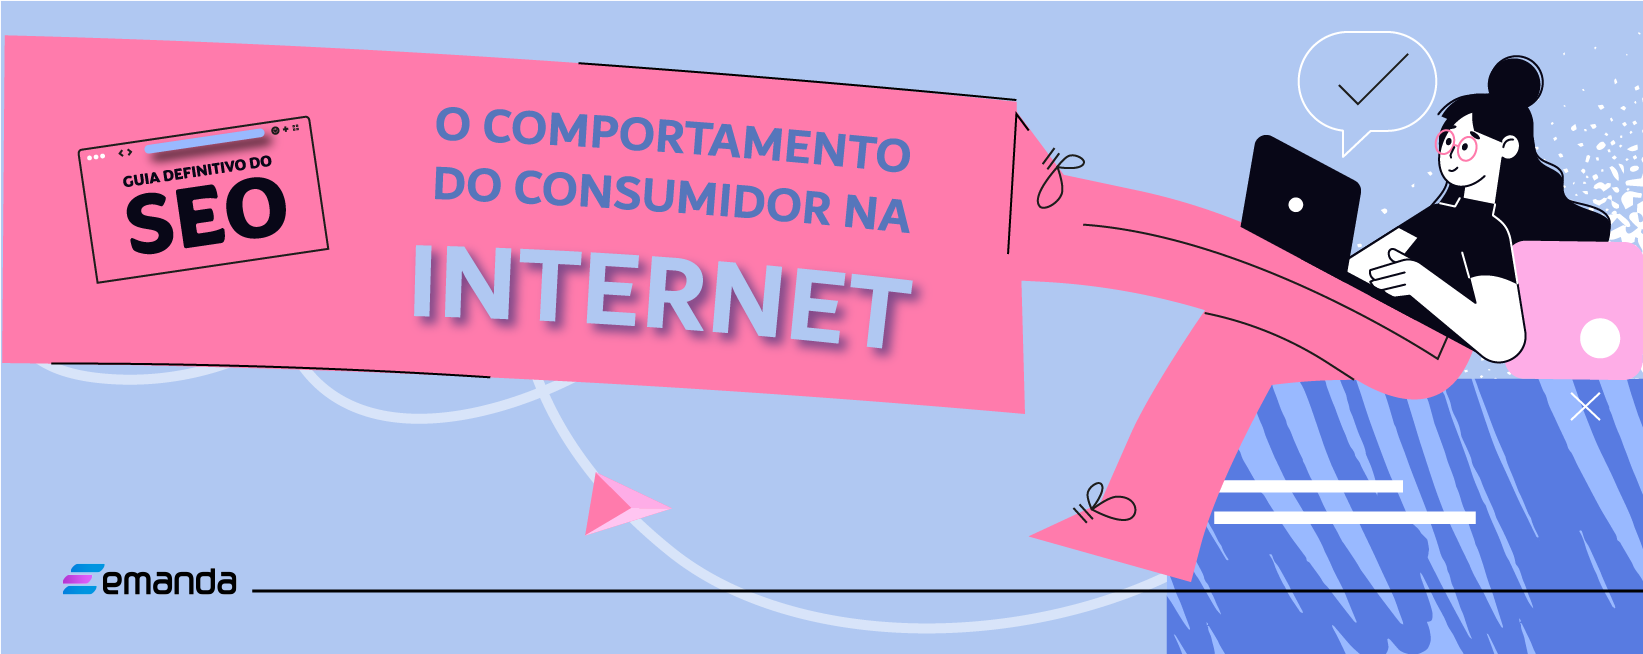 Read more about the article O guia definitivo do SEO: o comportamento do consumidor na internet